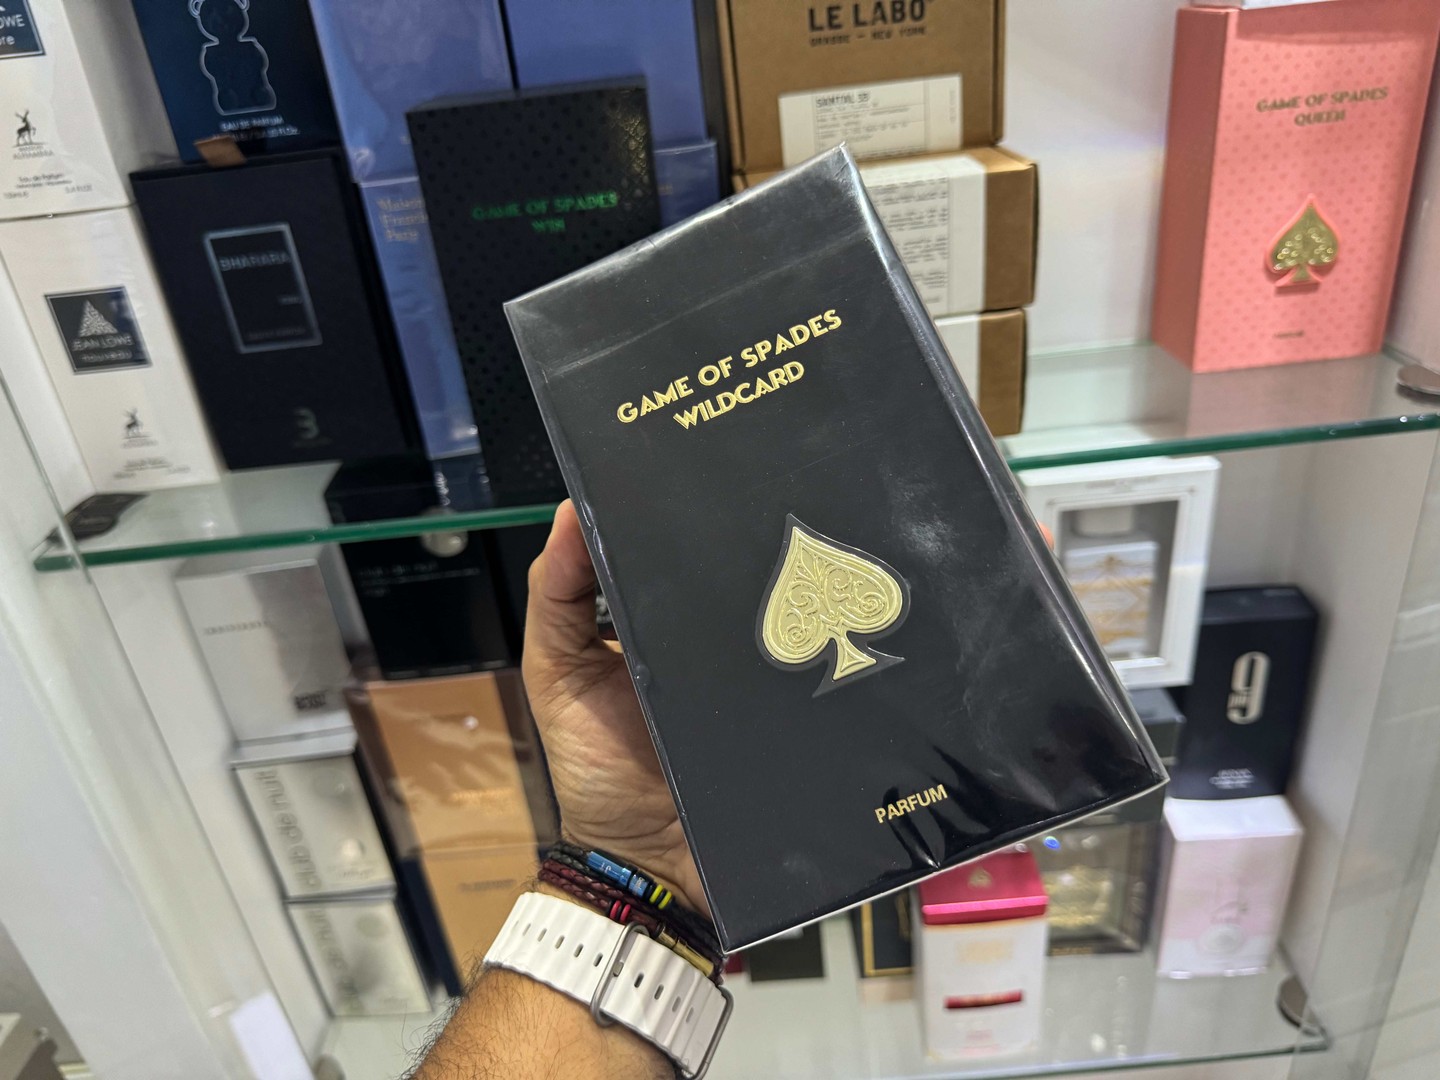 joyas, relojes y accesorios - Perfumes Jo Milano Paris Game of Spades WILCARD 100ML Nuevo, RD$ 5,800 NEG 0